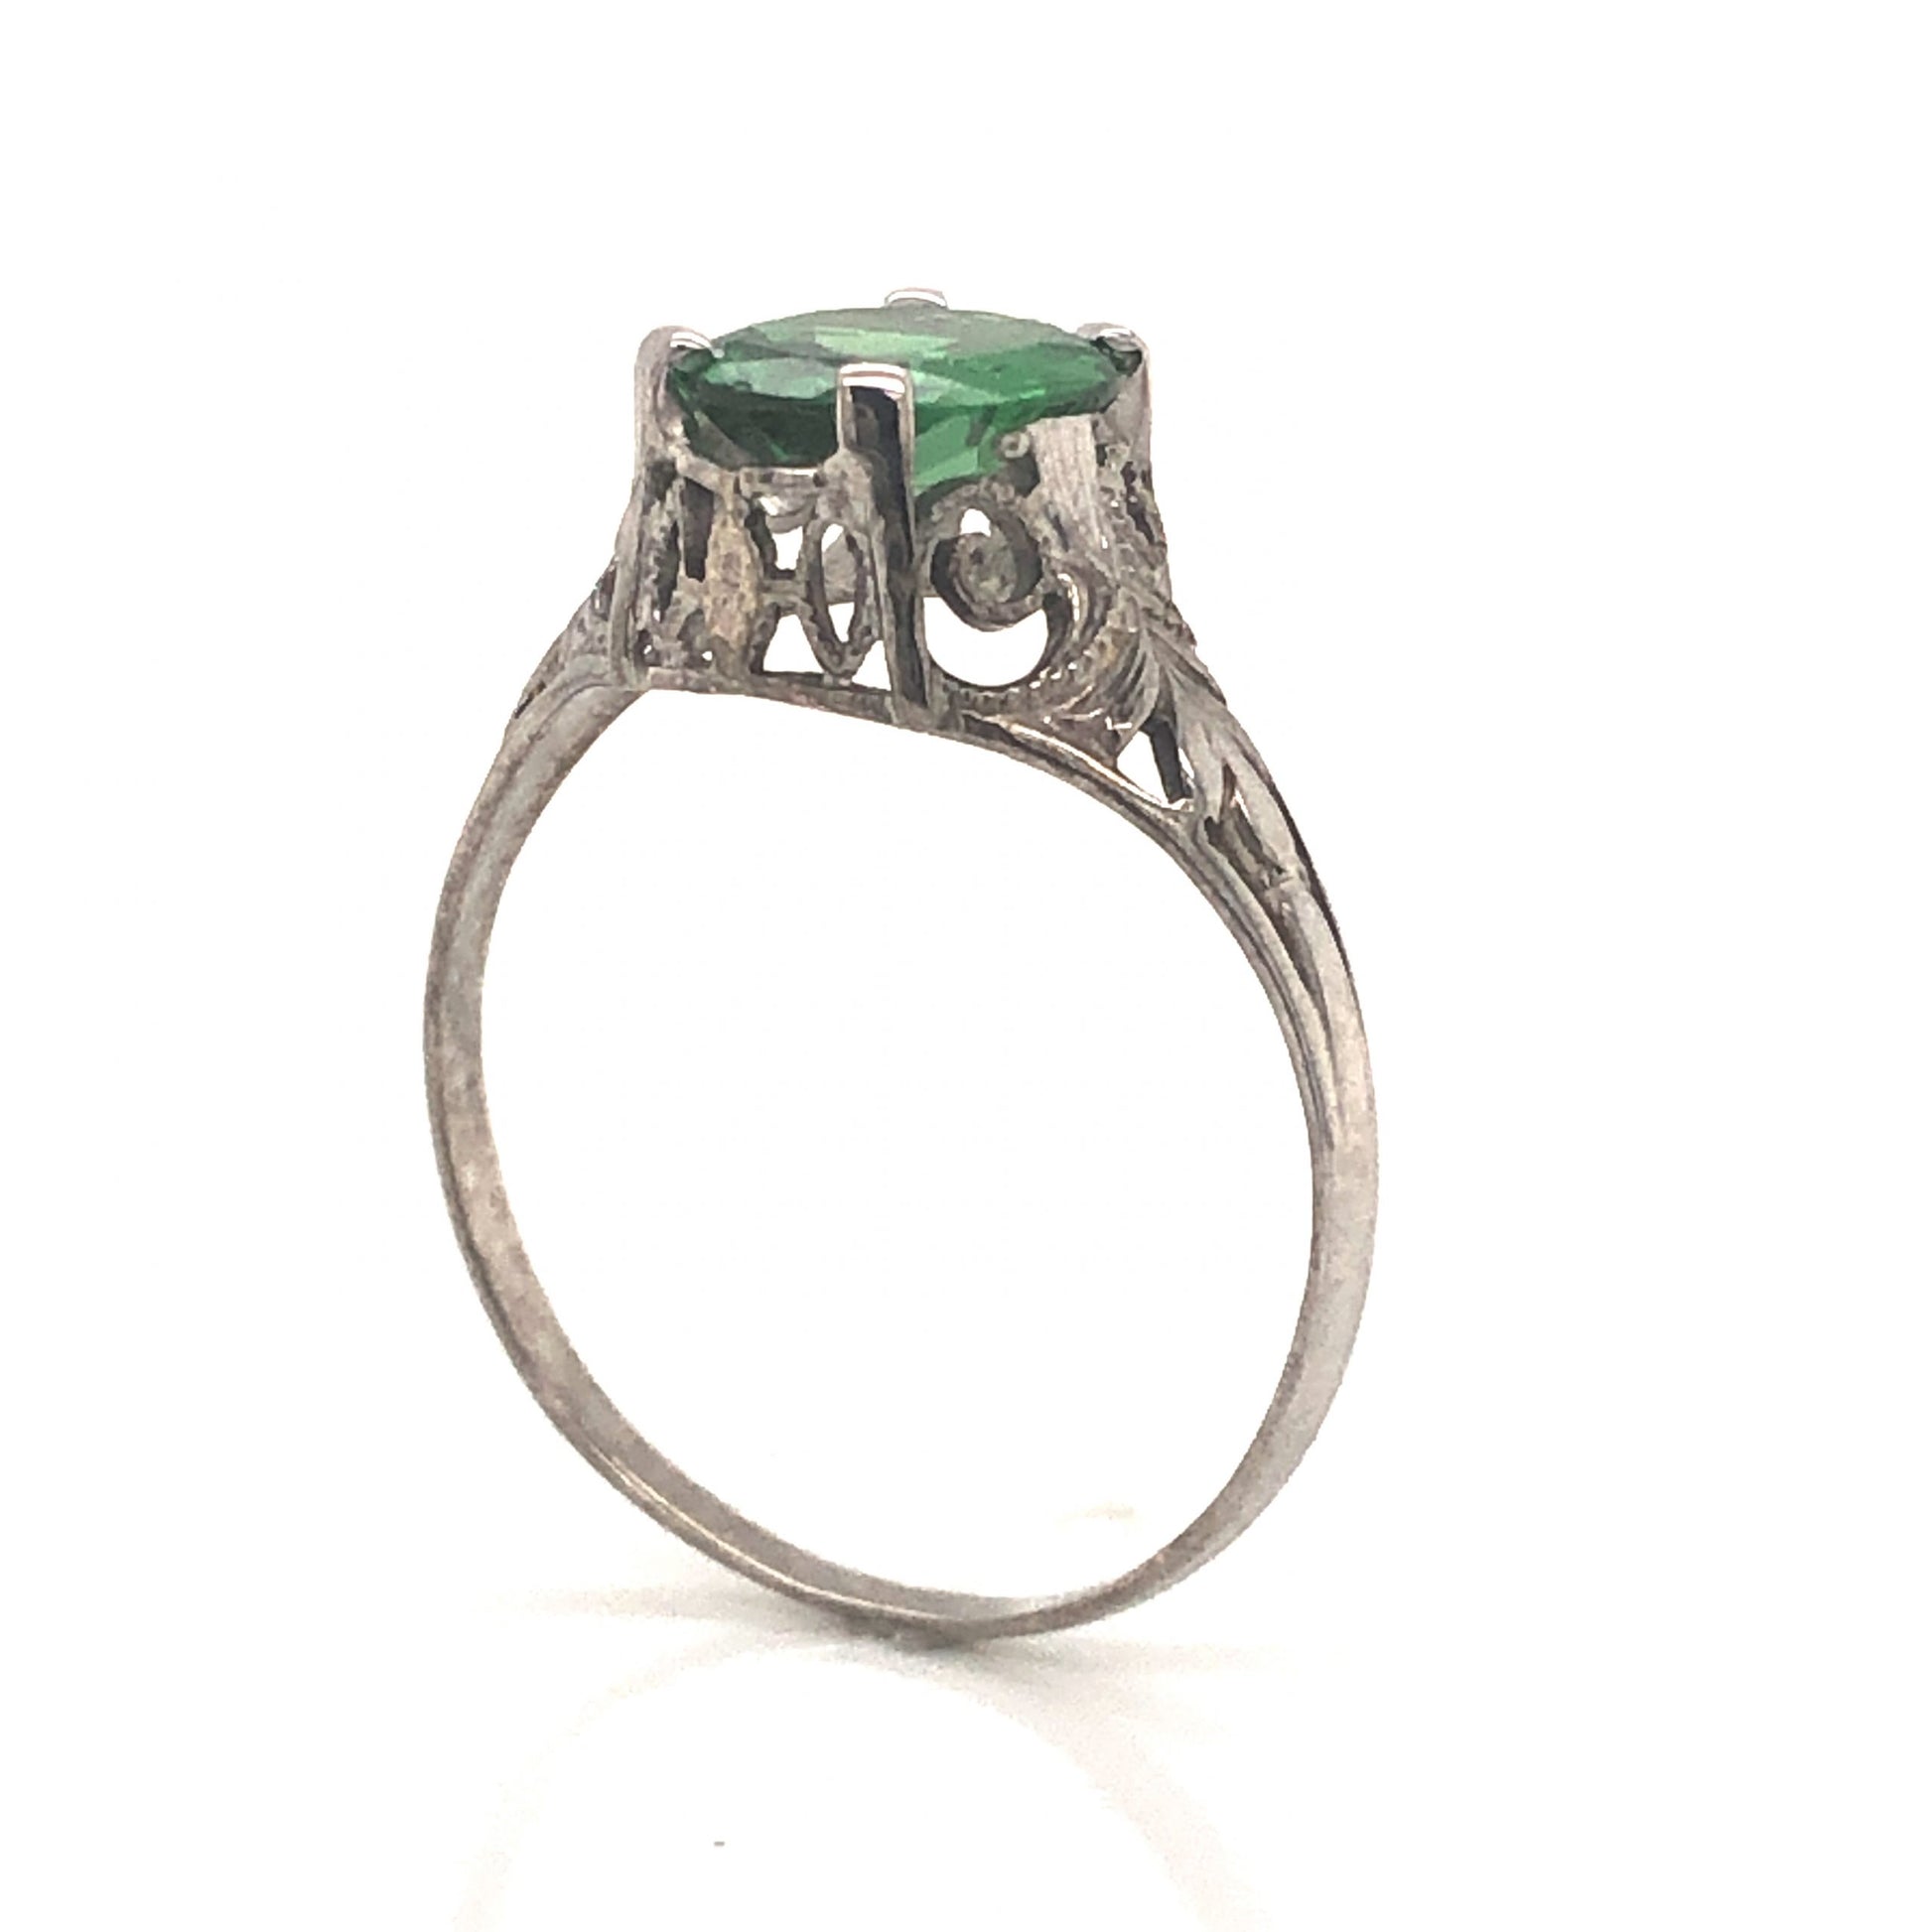 Art Deco Tsavorite Garnet Engagement Ring in 18k White GoldComposition: 18 Karat White Gold Ring Size: 7 Total Gram Weight: 2.0 g Inscription: 18kt
      